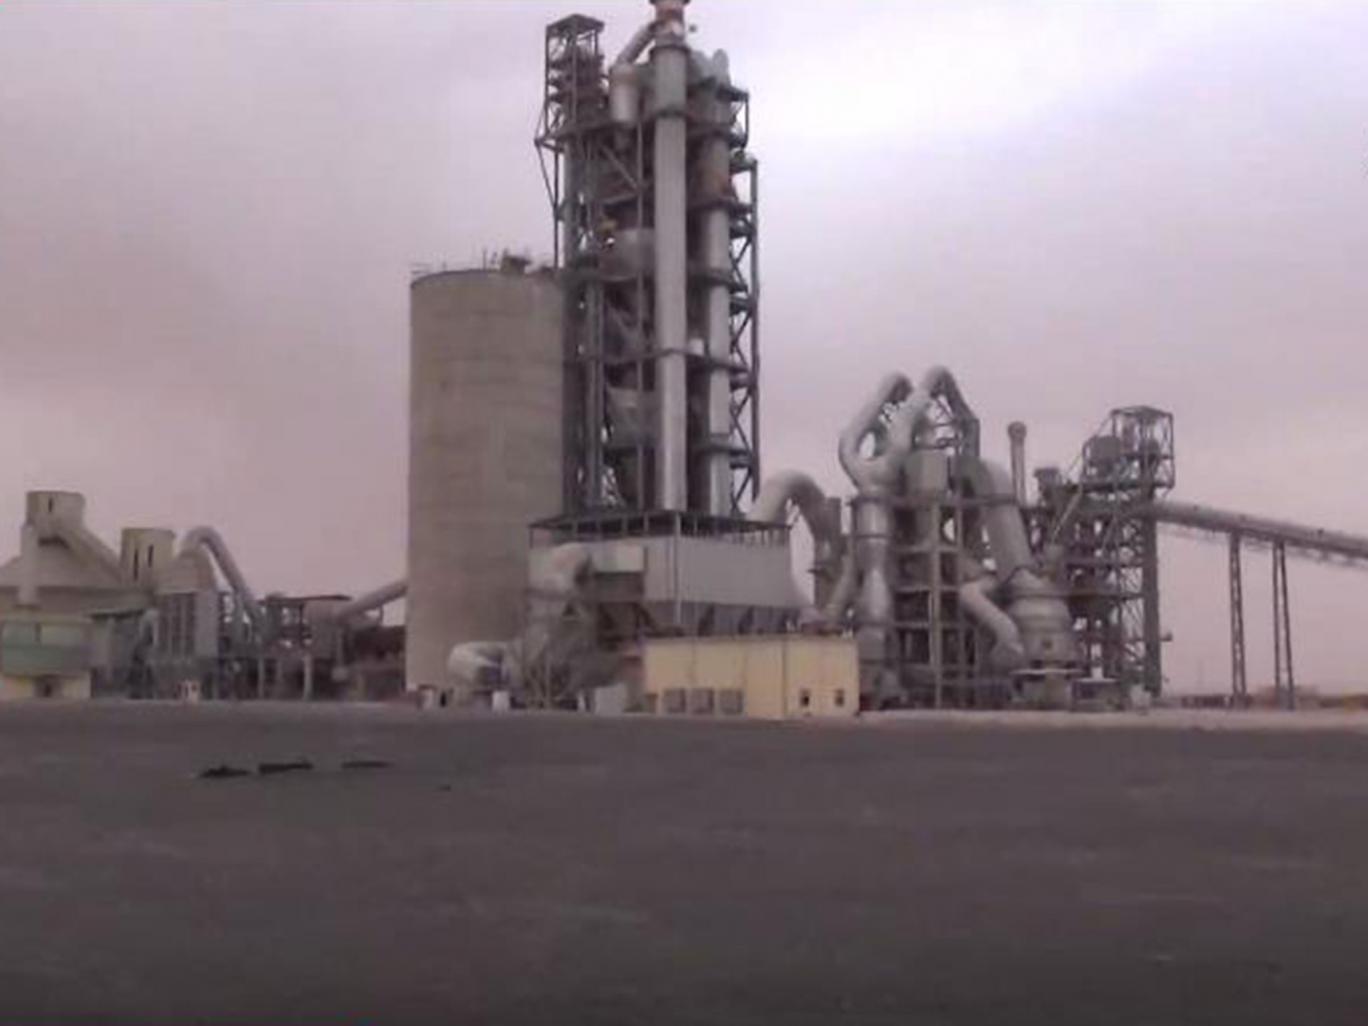 Tổ chức khủng bố IS tung một video tuyên truyền cho thấy các phần tử thánh chiến ở bên trong nhà máy xi măng nơi chúng bắt cóc hàng trăm công nhân vào ngày 4/4